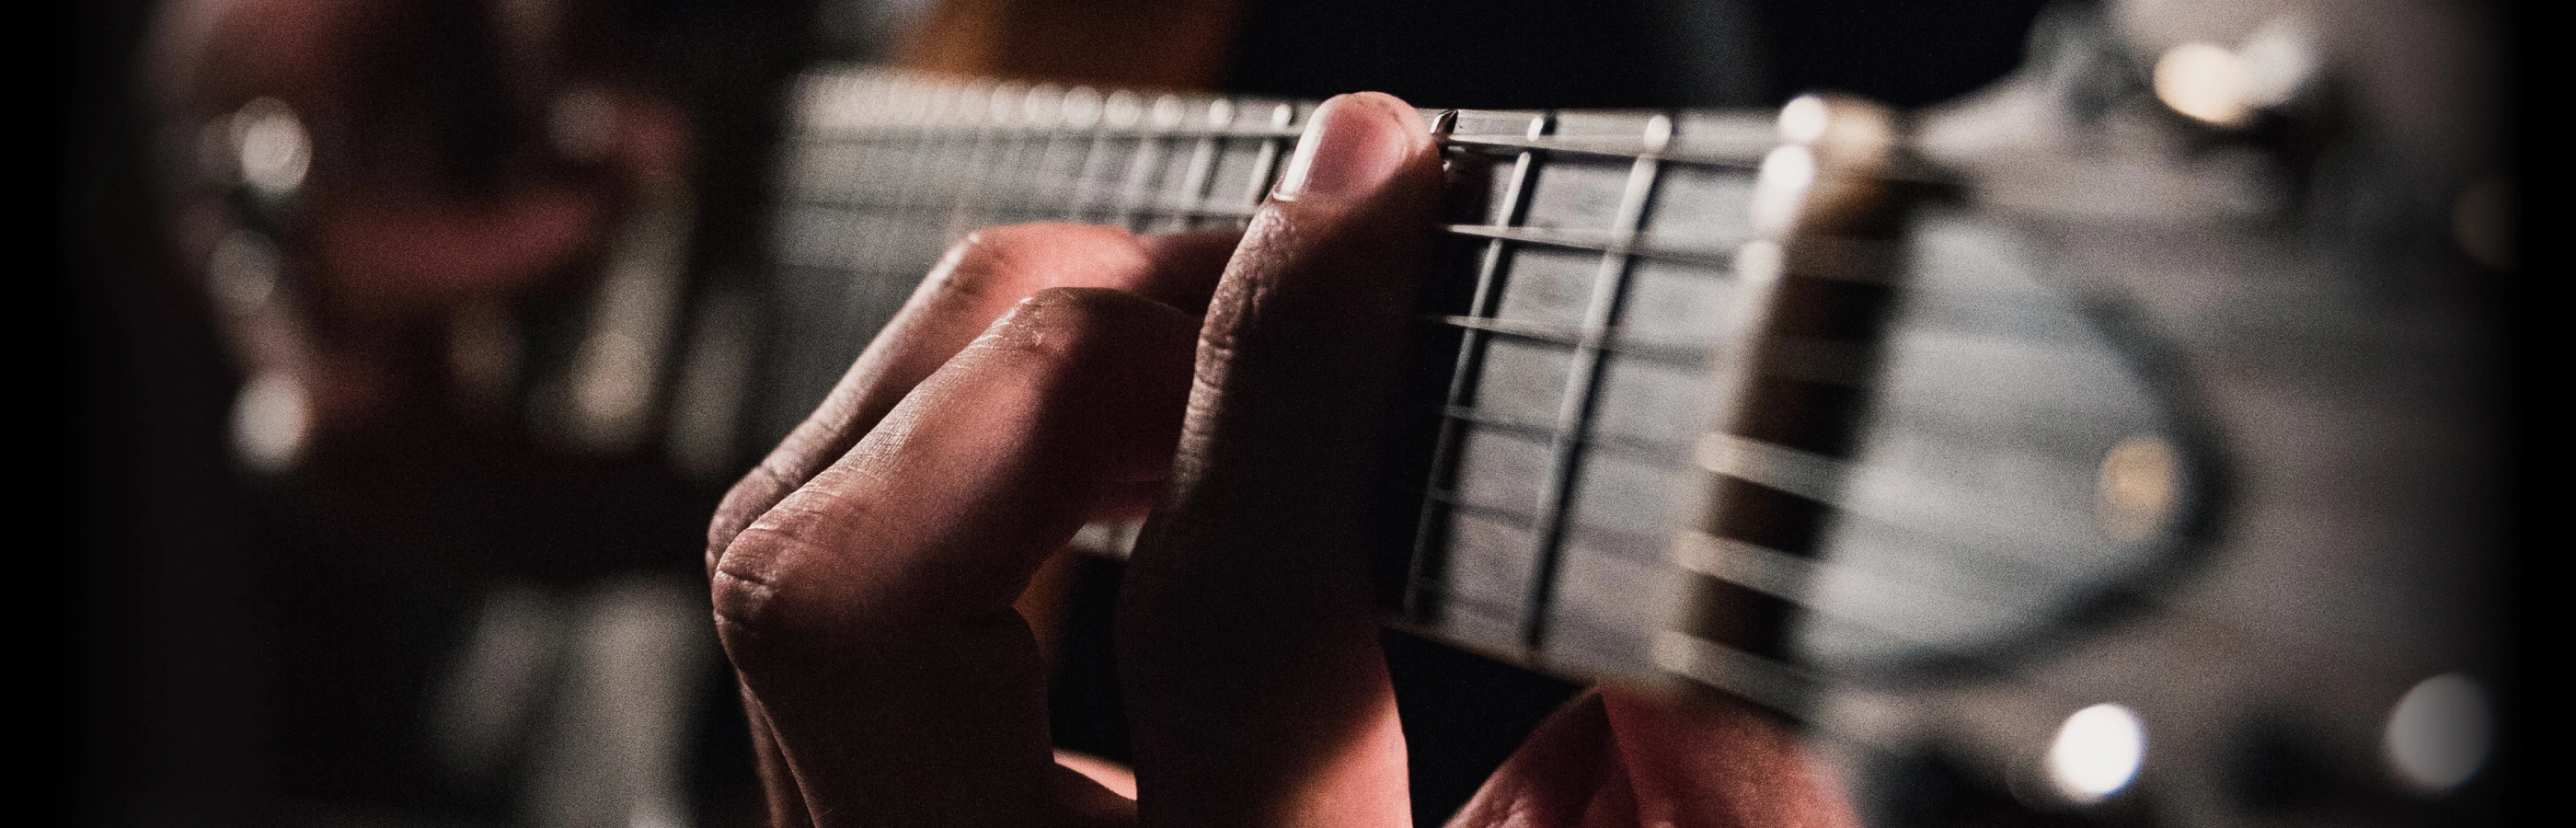 Closeup of a guitar player.